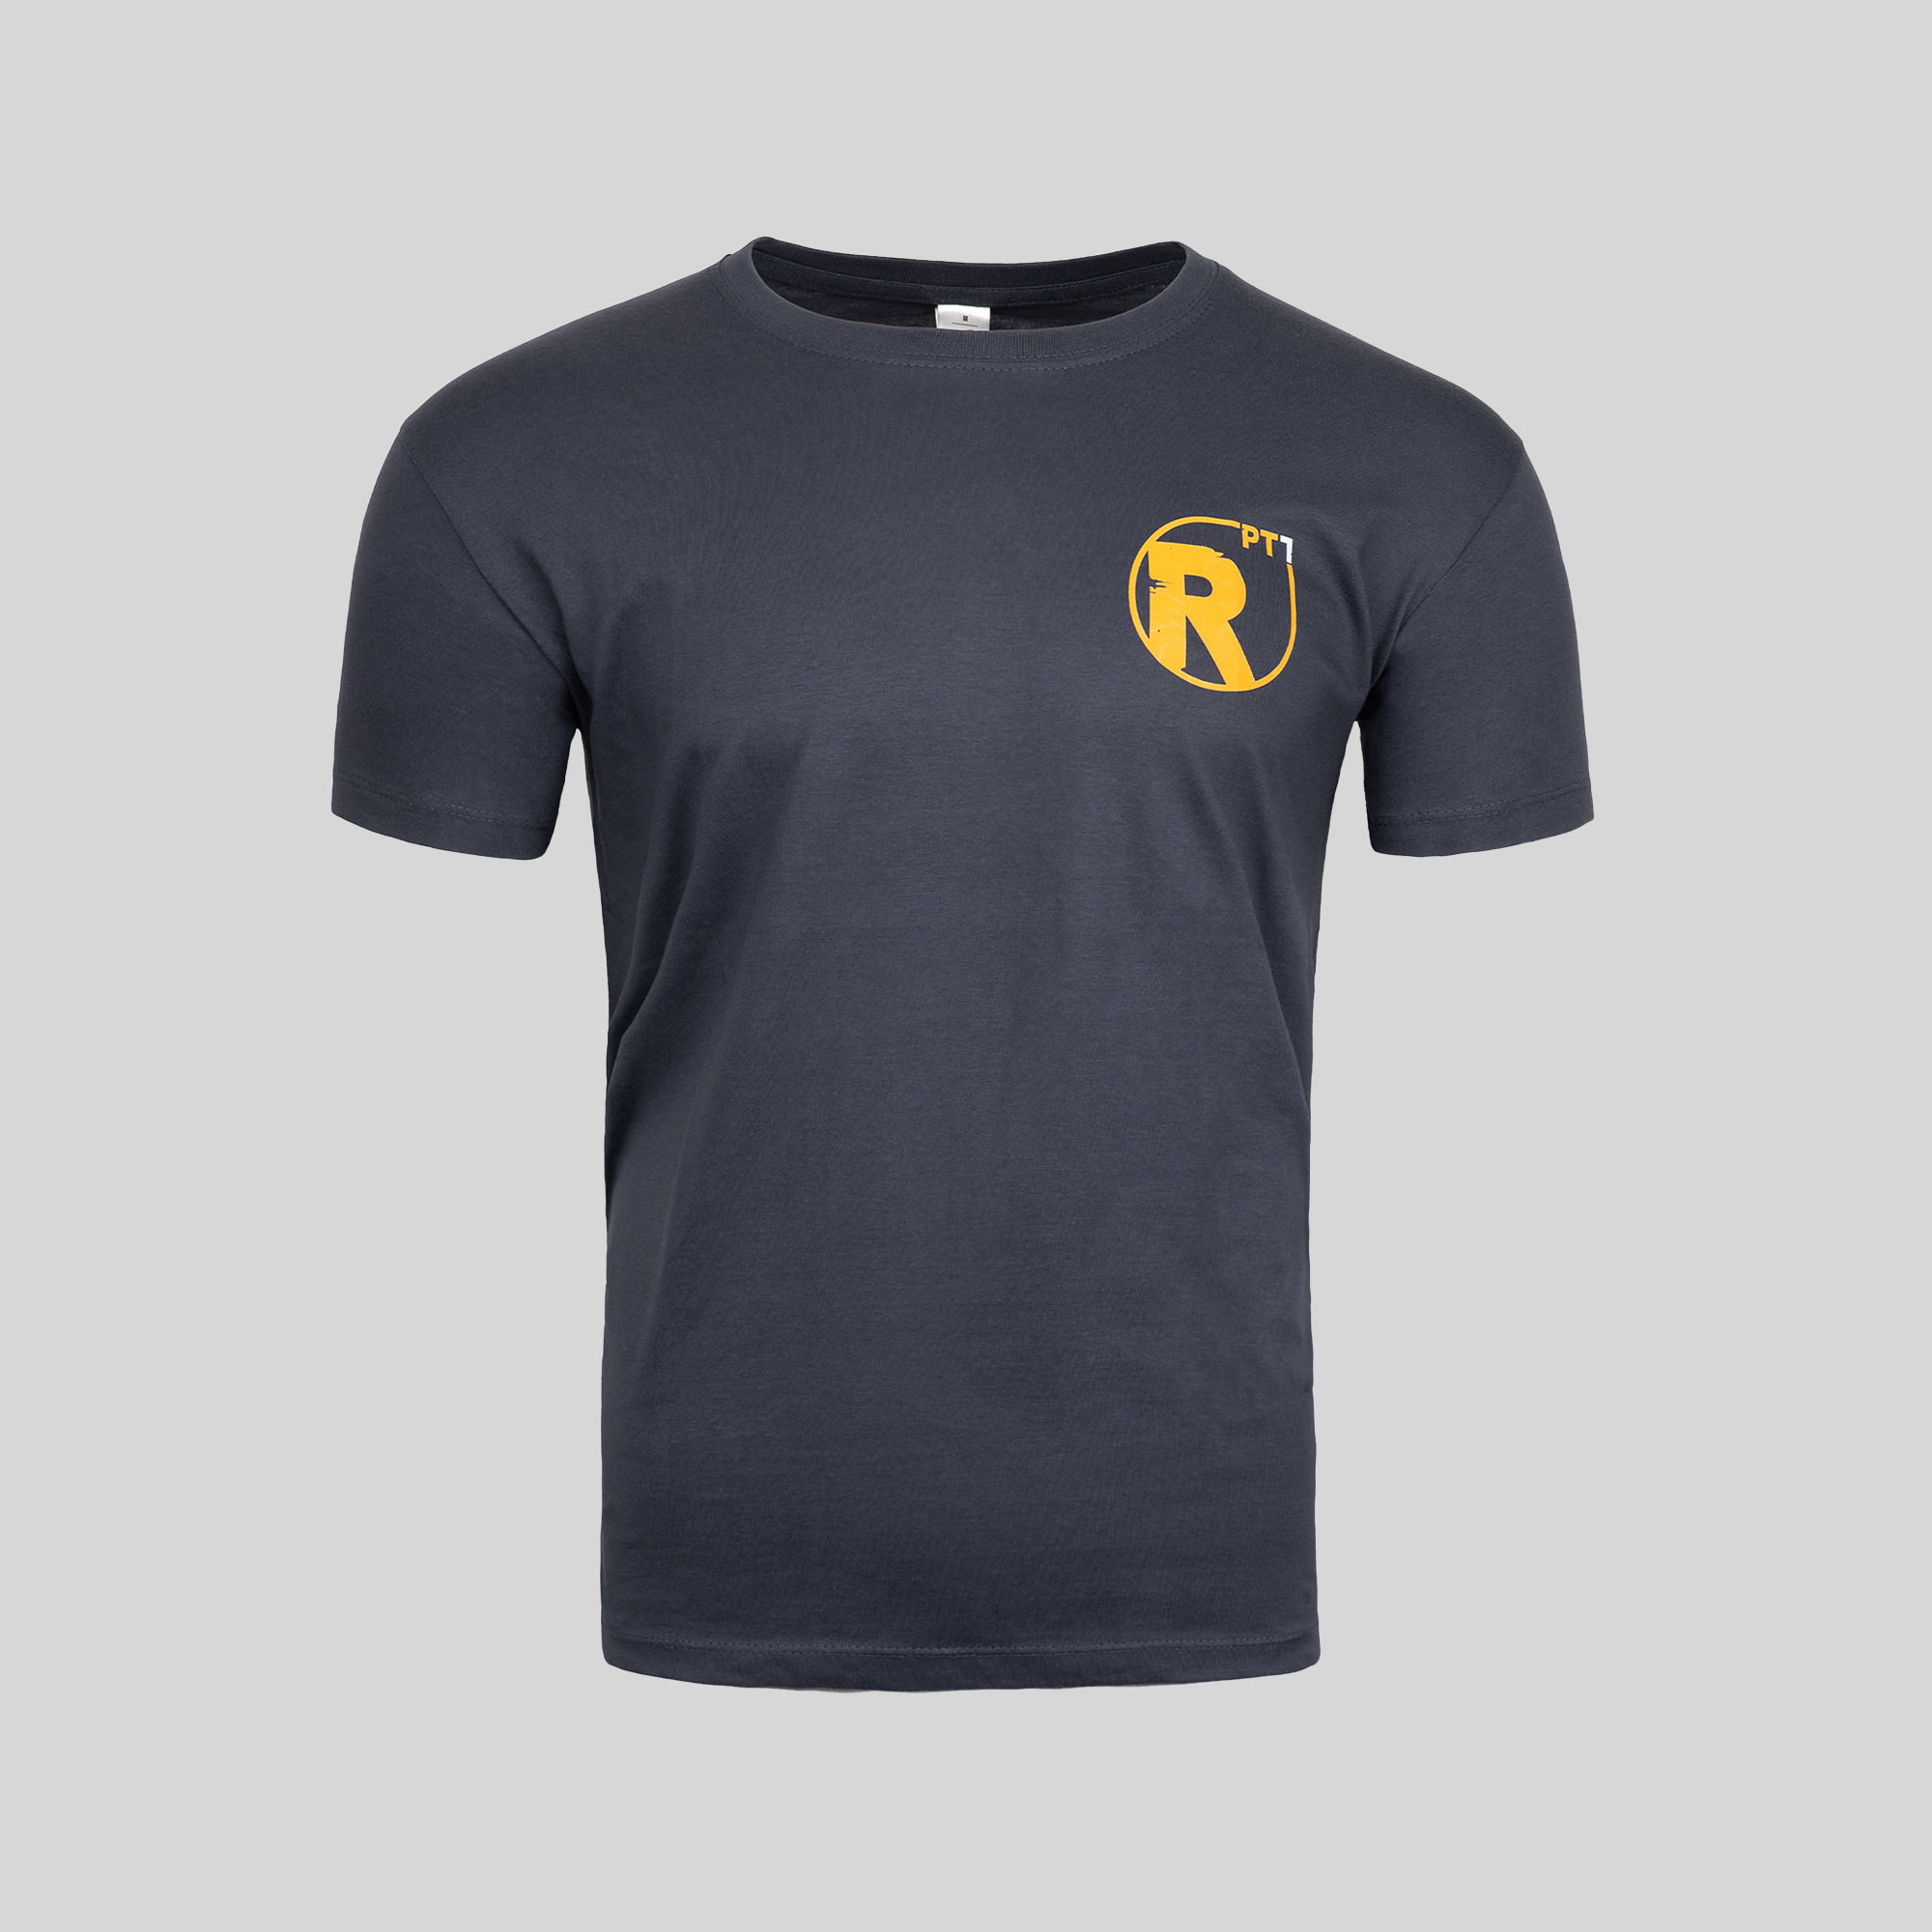 Ein Bekleidungs-T-Shirt mit dem Buchstaben „r“ darauf.